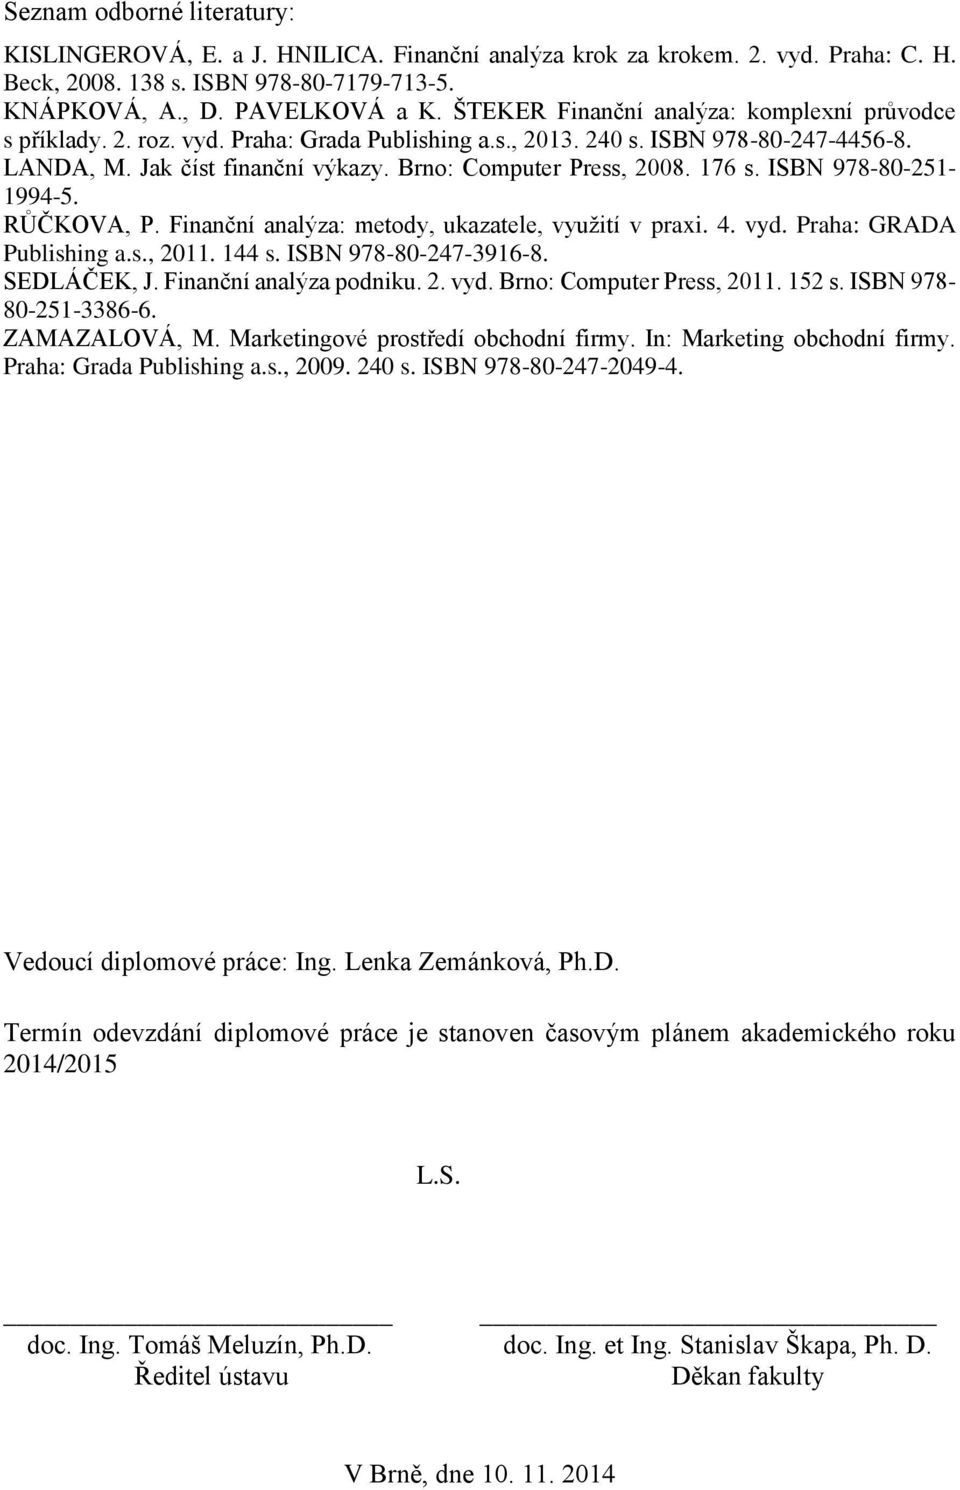 176 s. ISBN 978-80-251-1994-5. RŮČKOVA, P. Finanční analýza: metody, ukazatele, využití v praxi. 4. vyd. Praha: GRADA Publishing a.s., 2011. 144 s. ISBN 978-80-247-3916-8. SEDLÁČEK, J.